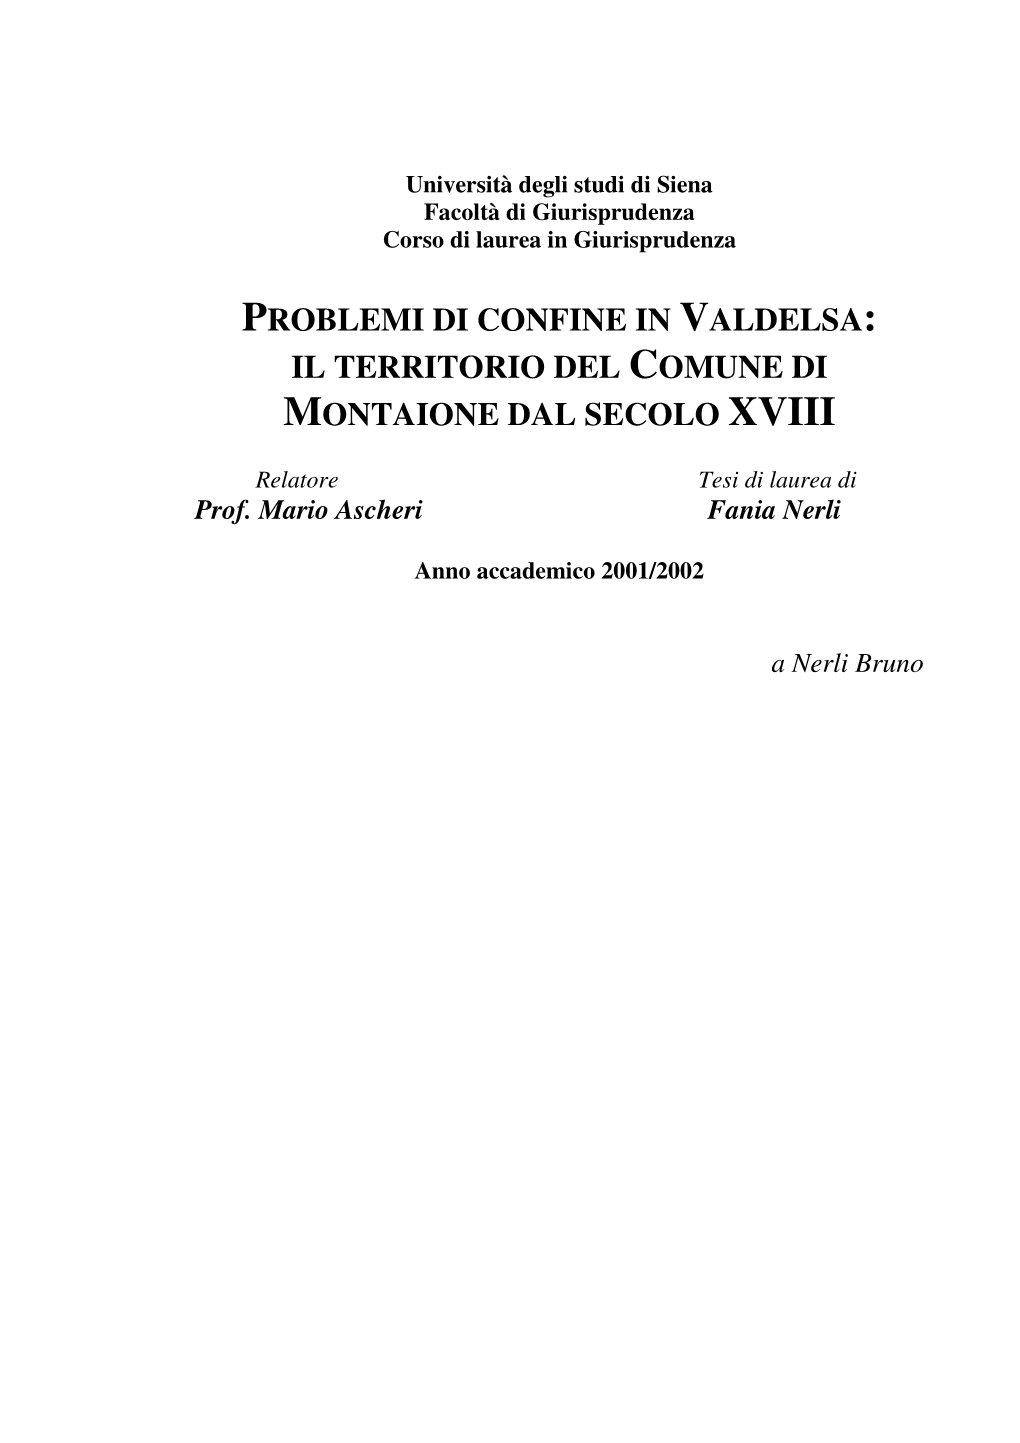 Problemi Di Confine in Valdelsa: Il